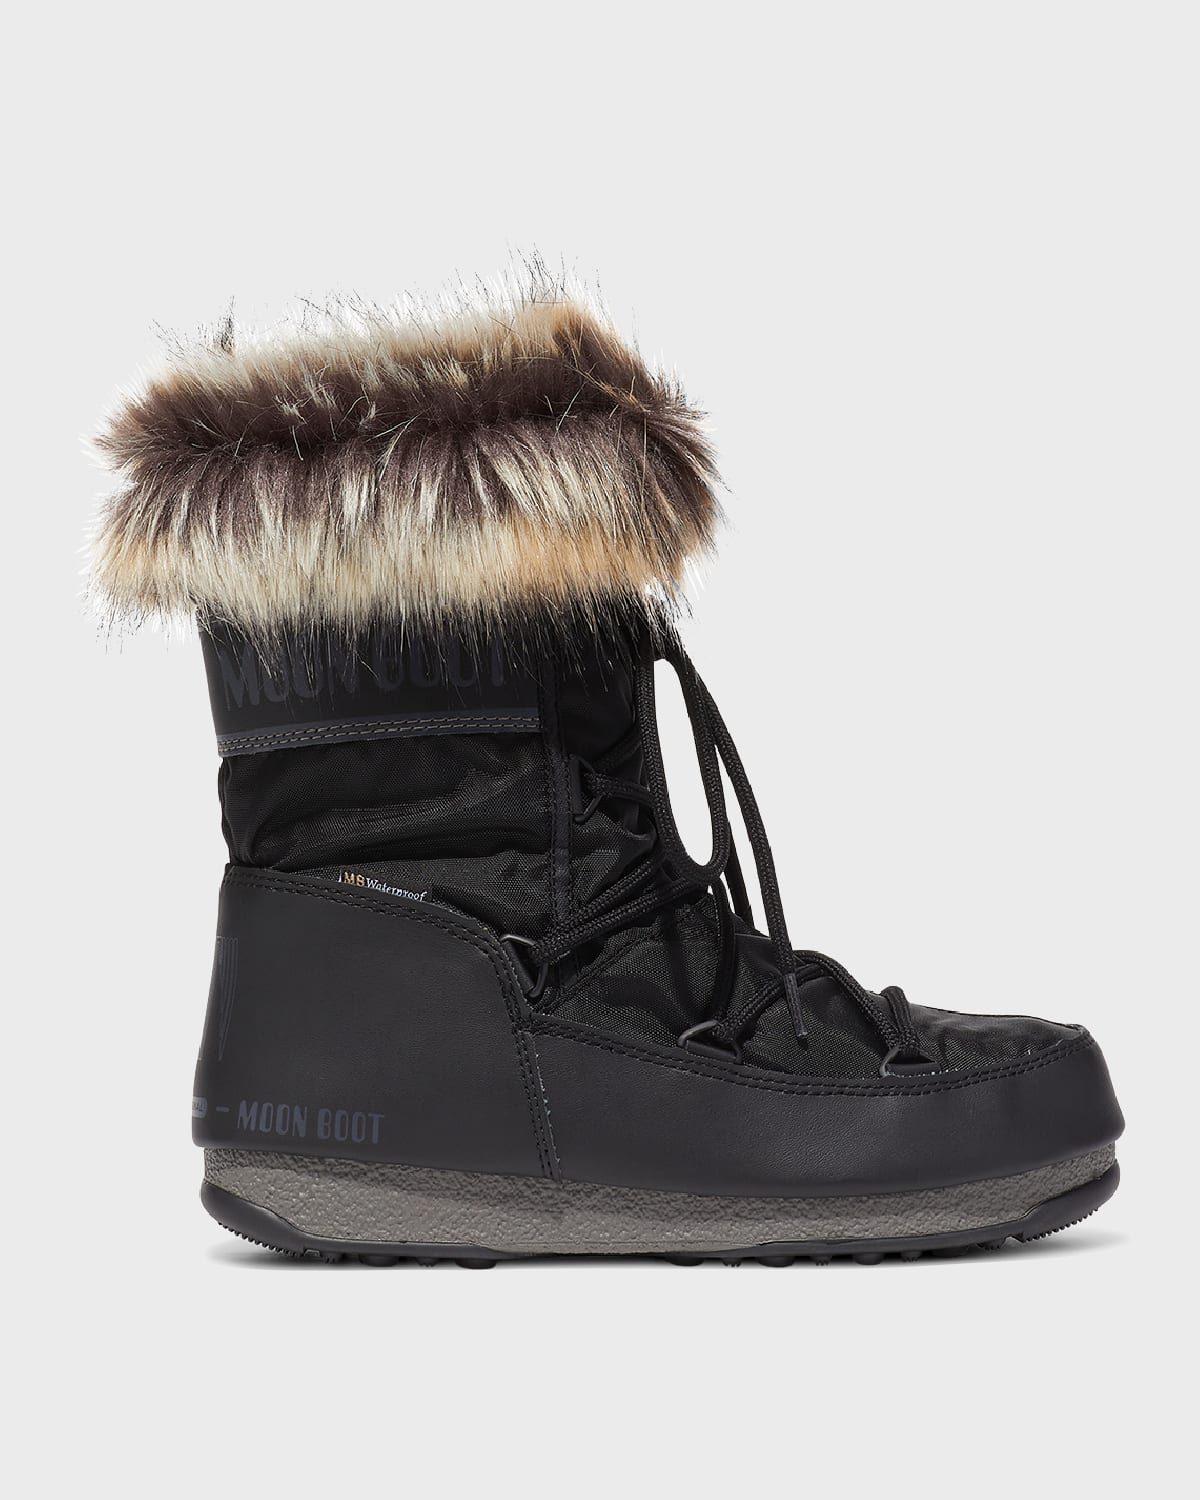 MOON BOOT Boots for Women | ModeSens